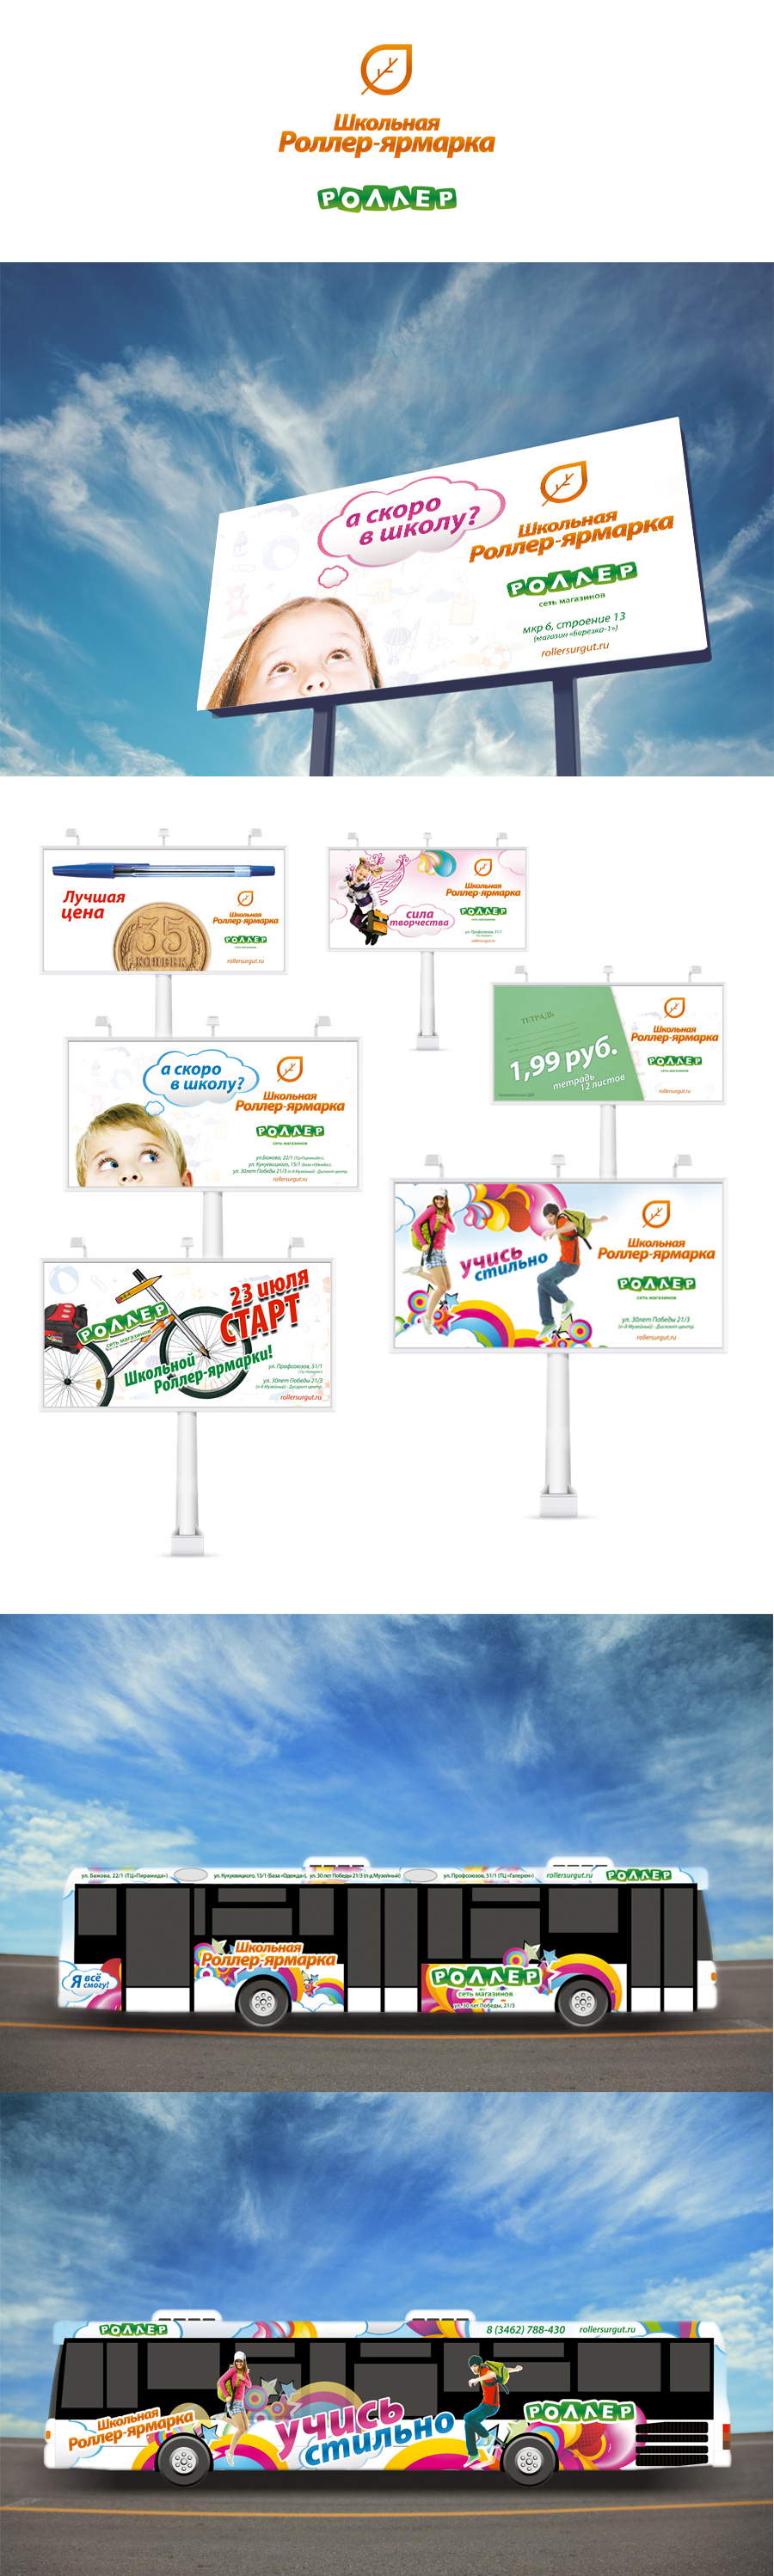 Дизайн и графическая визуализация послания к целевой аудитории от Роллера в 2013-м году в осенней школьной рекламной кампании